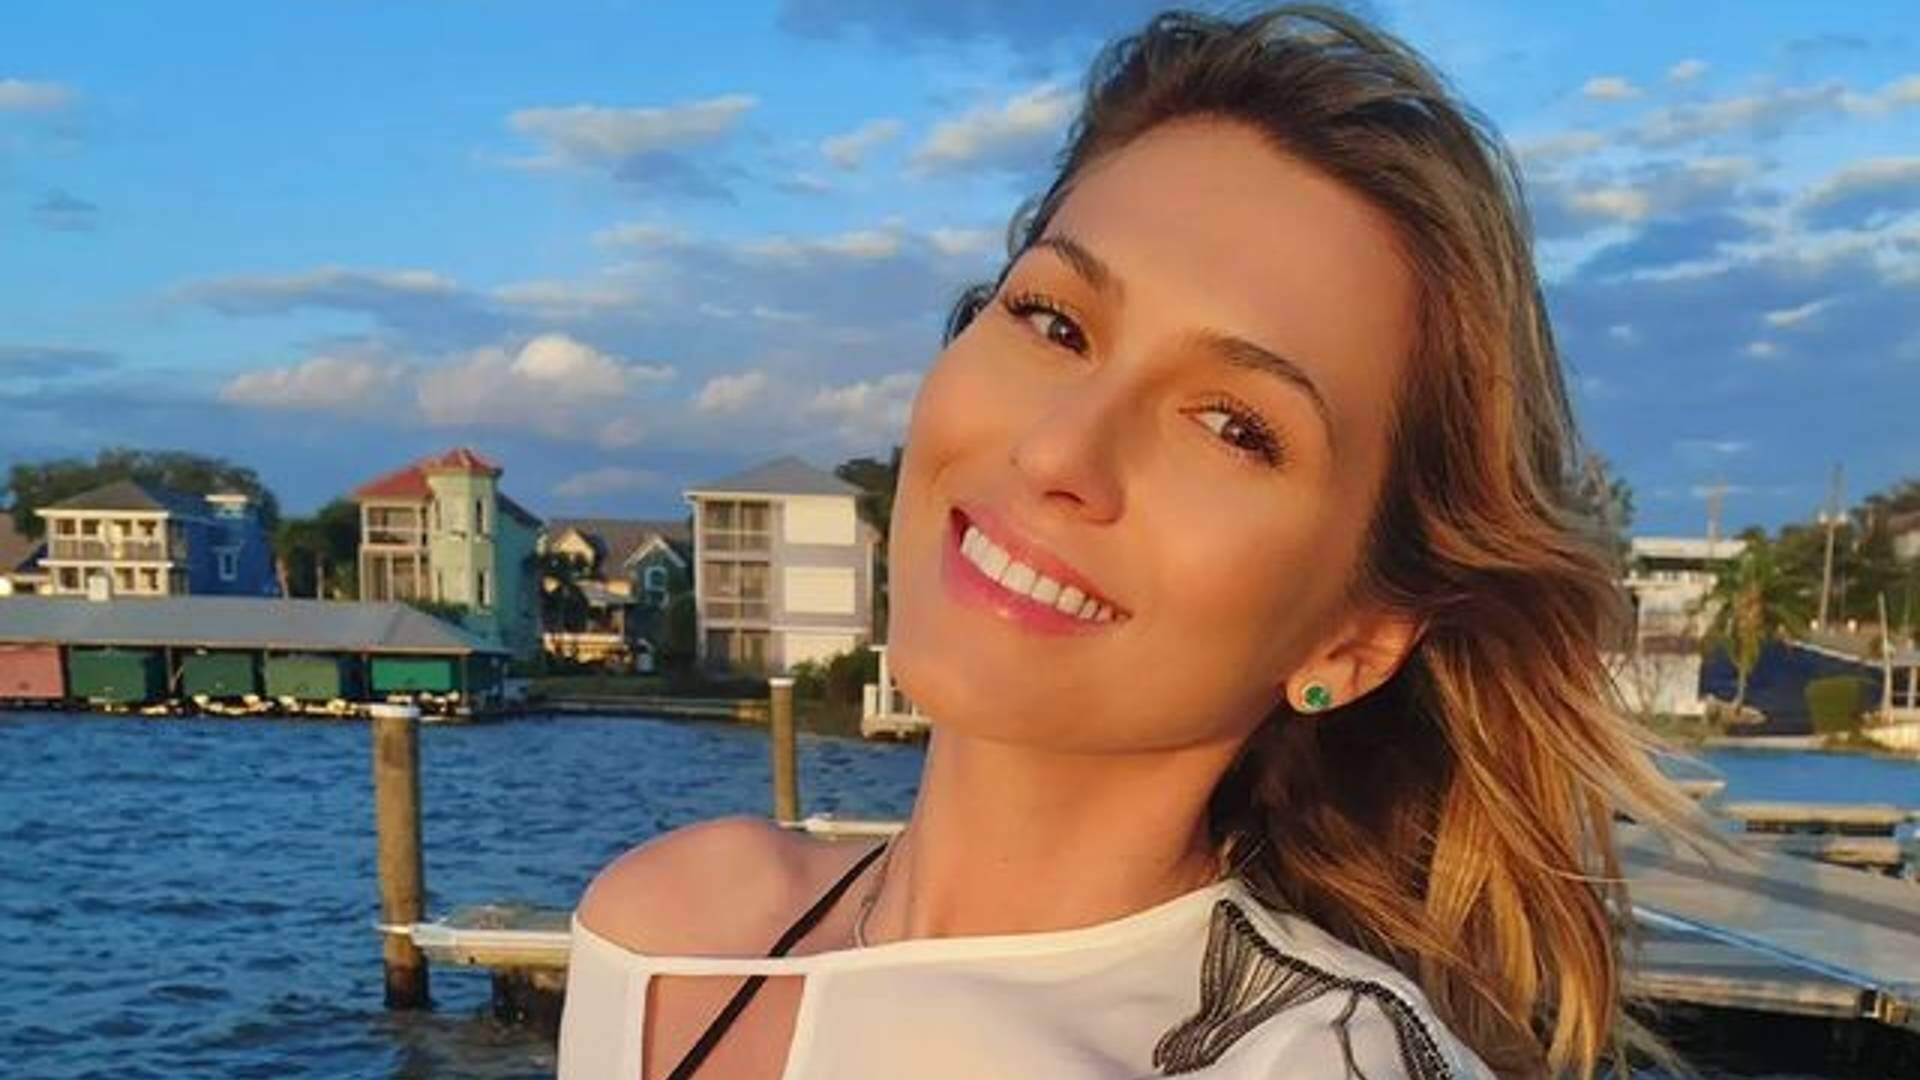 Na praia, Lívia Andrade ostenta glúteos definidos e puxa parte do biquíni no meio do mar para provocar - Metropolitana FM